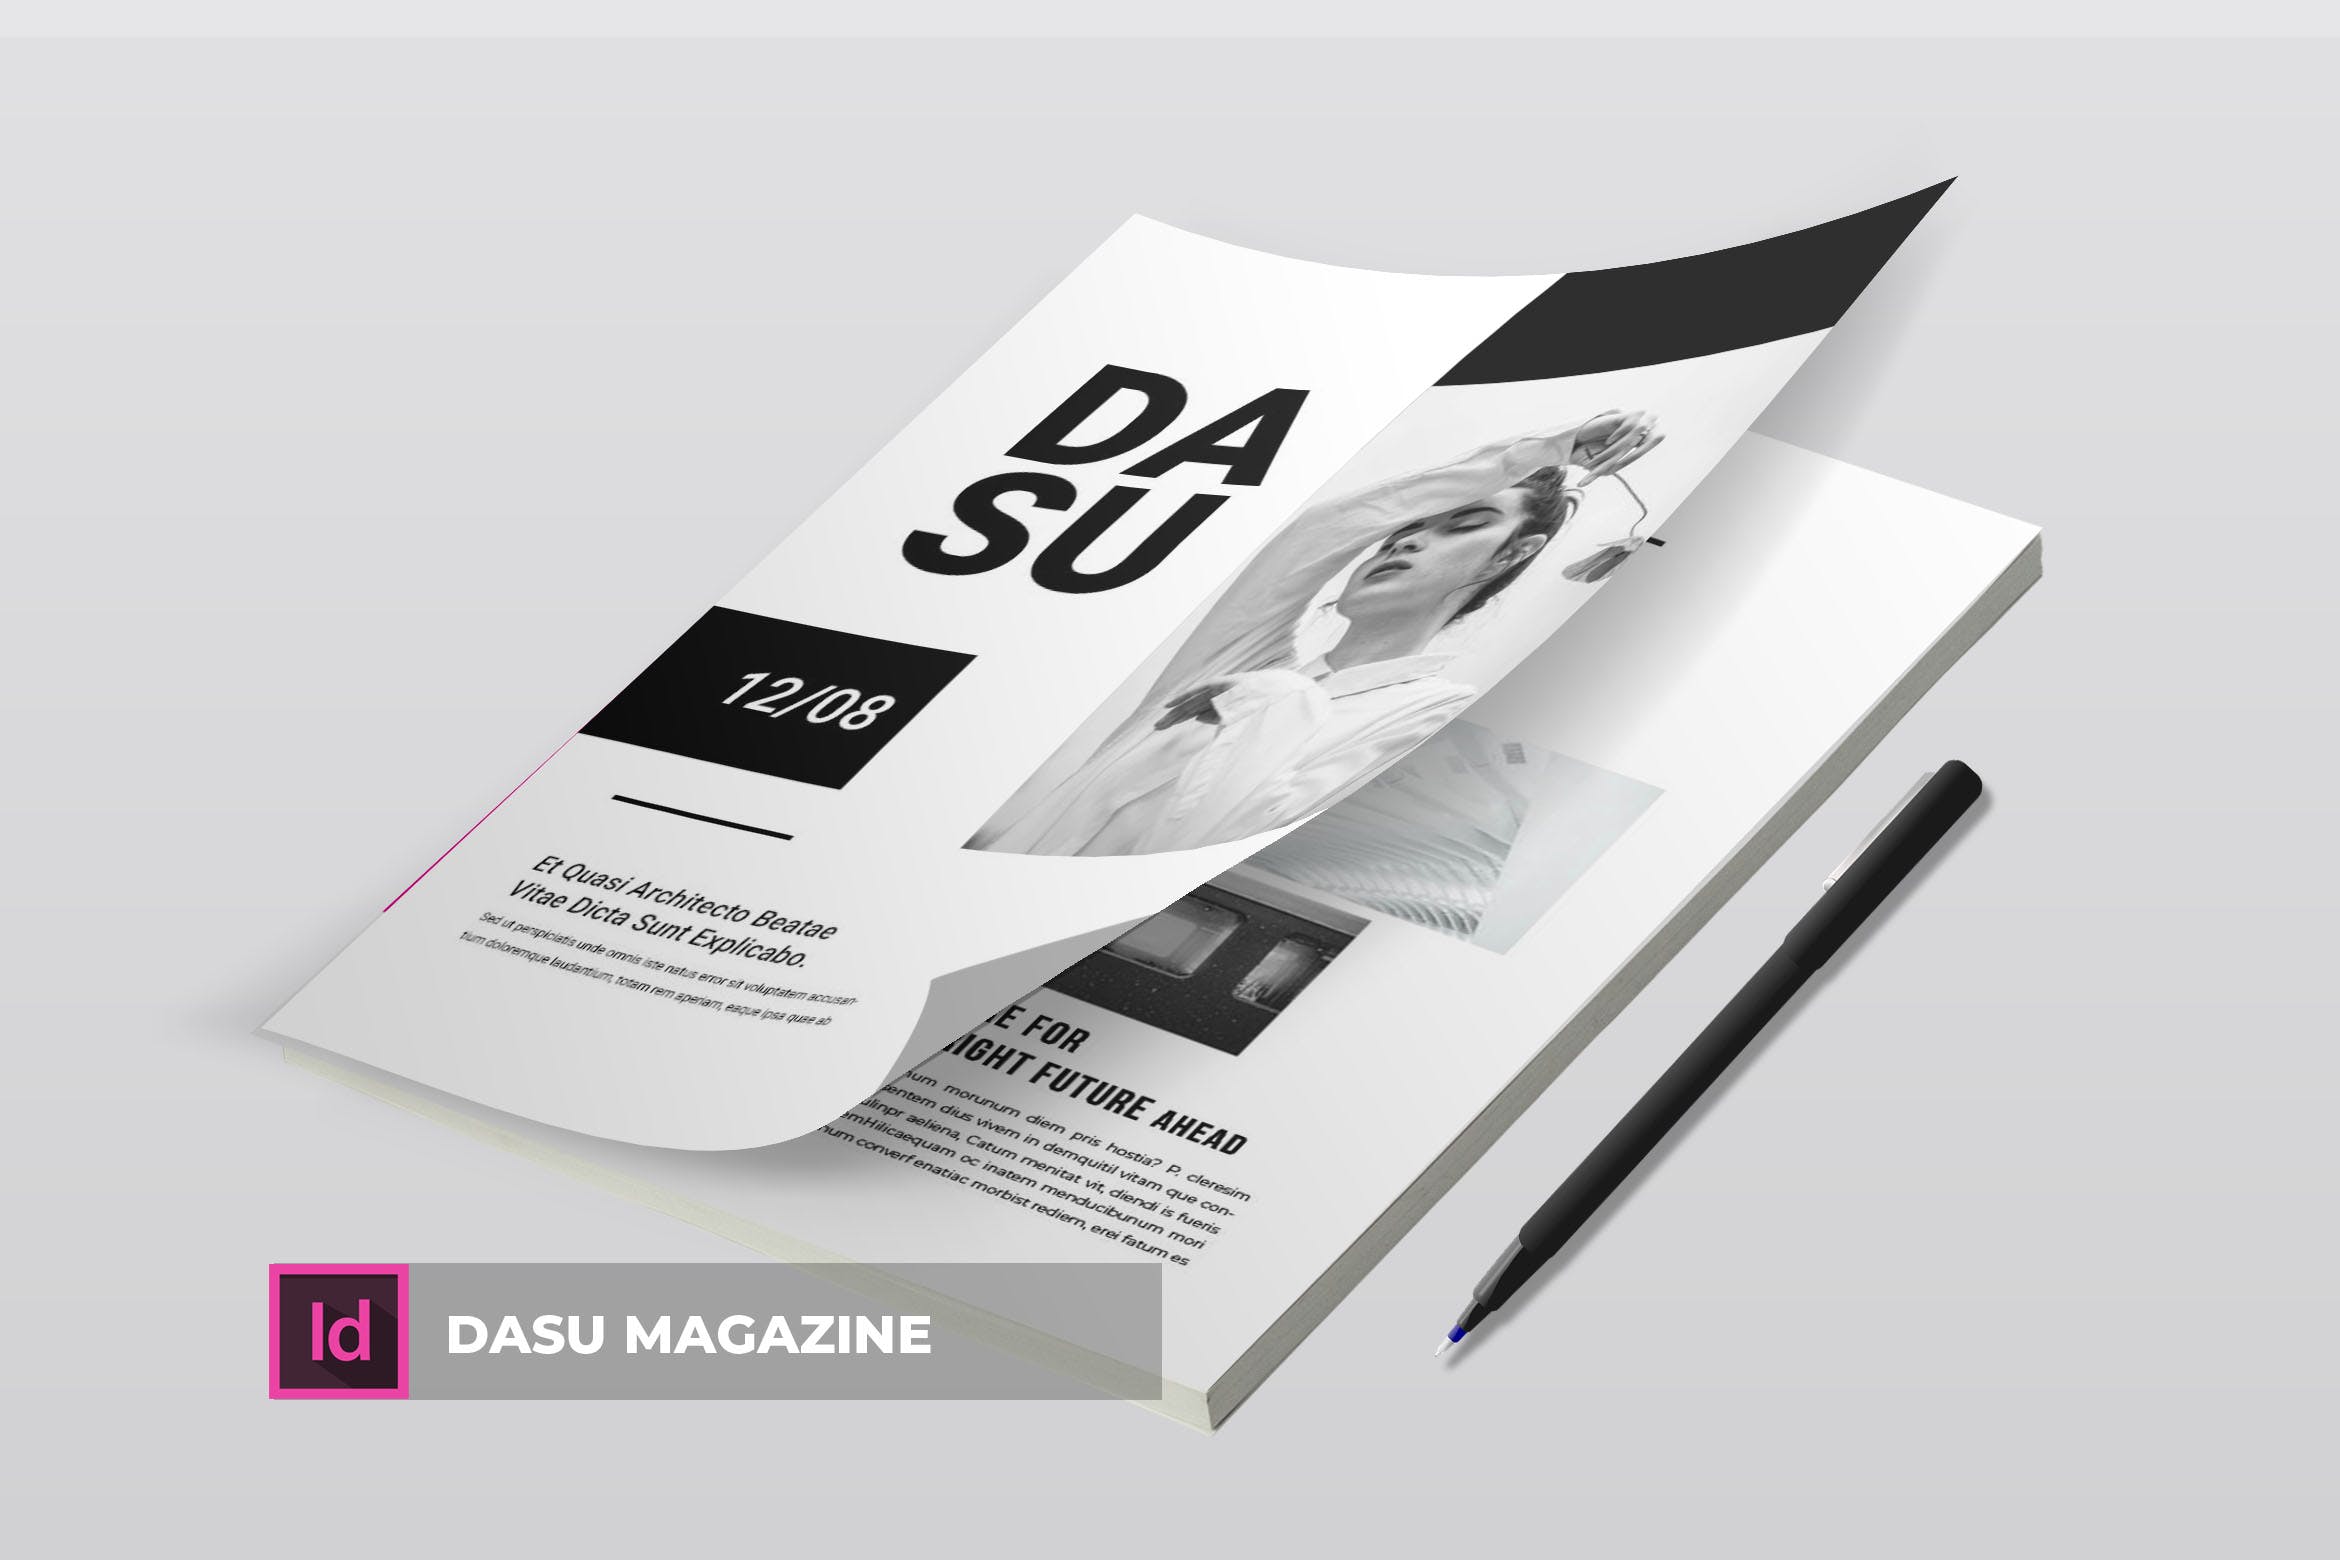 摄影艺术/时装设计主题非凡图库精选杂志排版设计模板 Dasu | Magazine Template插图